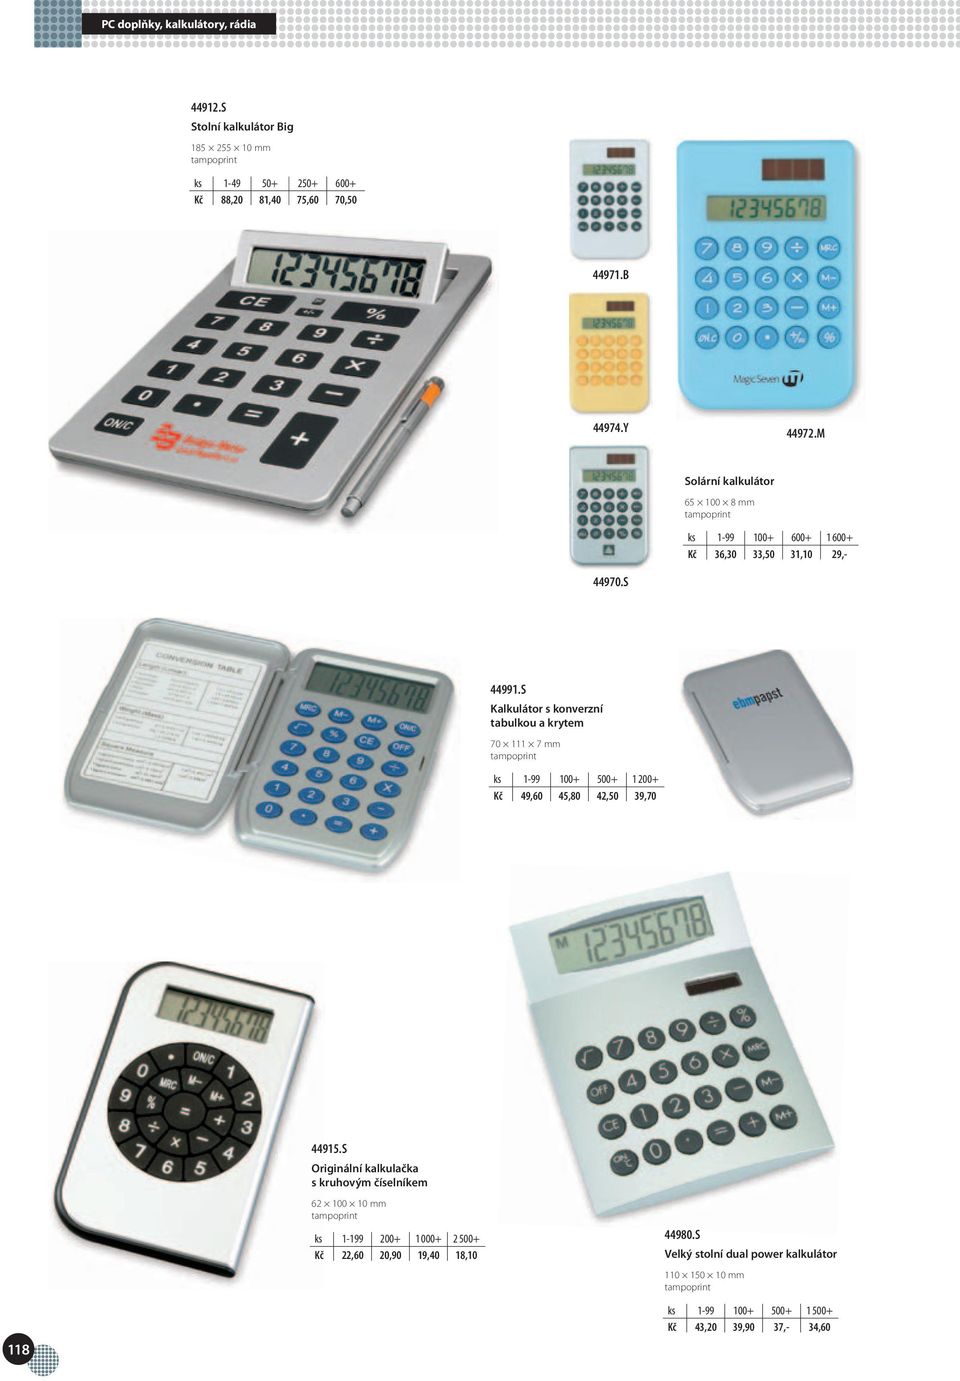 S Kalkulátor s konverzní tabulkou a krytem 70 111 7 mm ks 1-99 100+ 500+ 1 200+ Kč 49,60 45,80 42,50 39,70 44915.